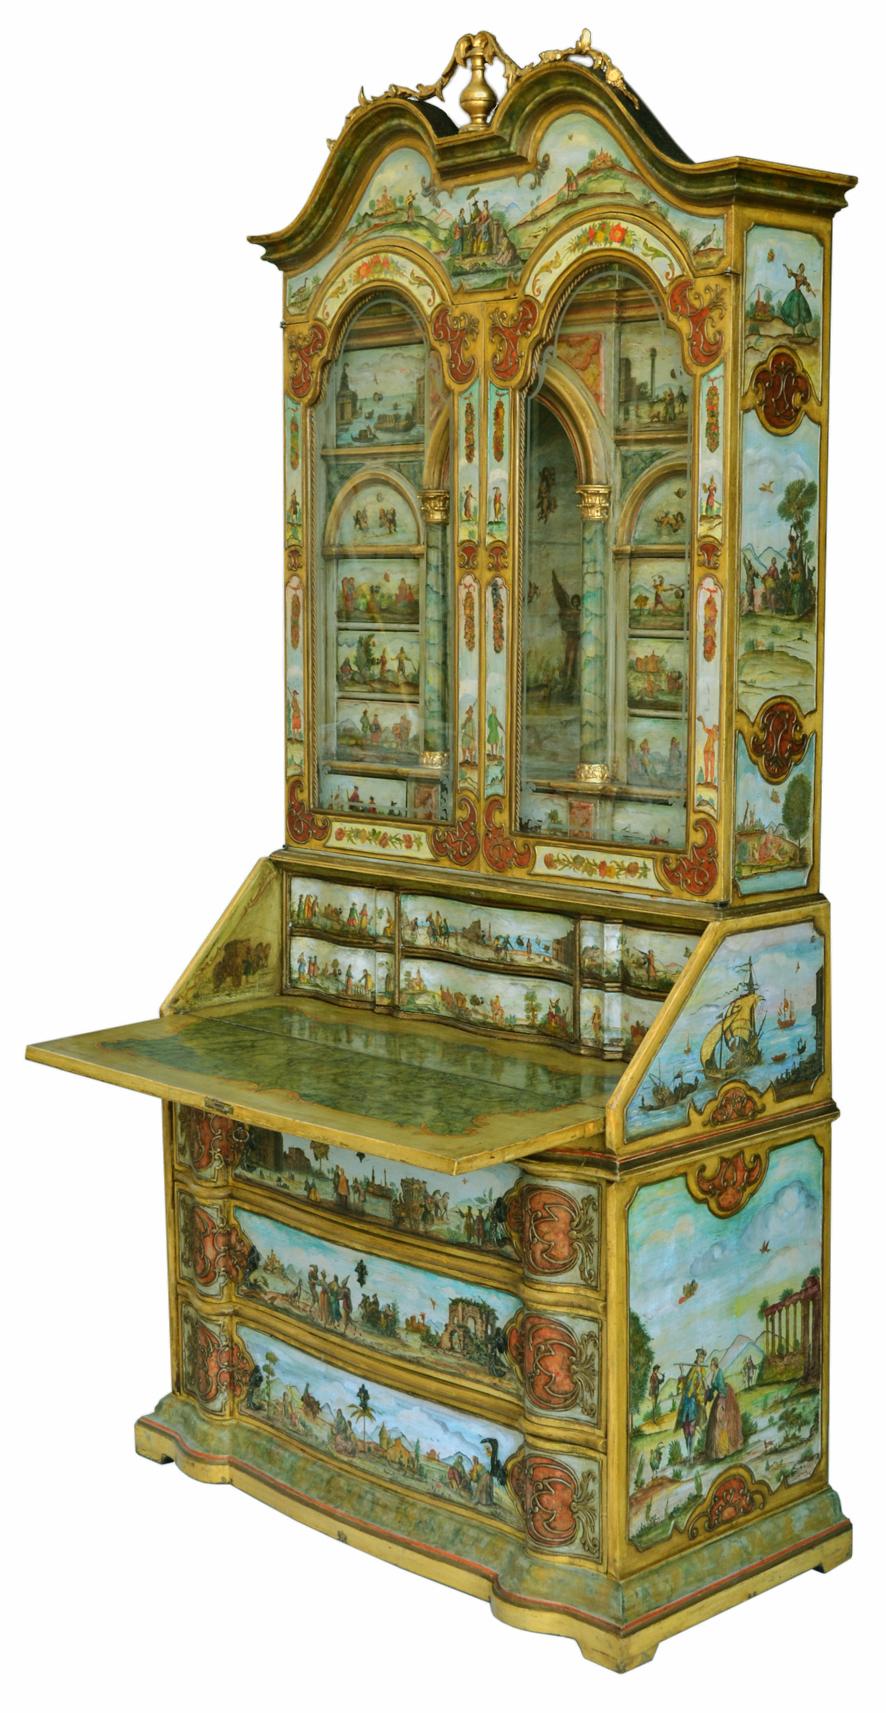 Dieses Trumeau wurde in der Technik der venezianischen Kunst handgefertigt.
Im 18. Jahrhundert verbreitete sich in Venedig die Mode des Lackierens. Mit kleinen Drucken, ausgeschnitten und dann auf das Holz geklebt, dann handbemalt und am Ende